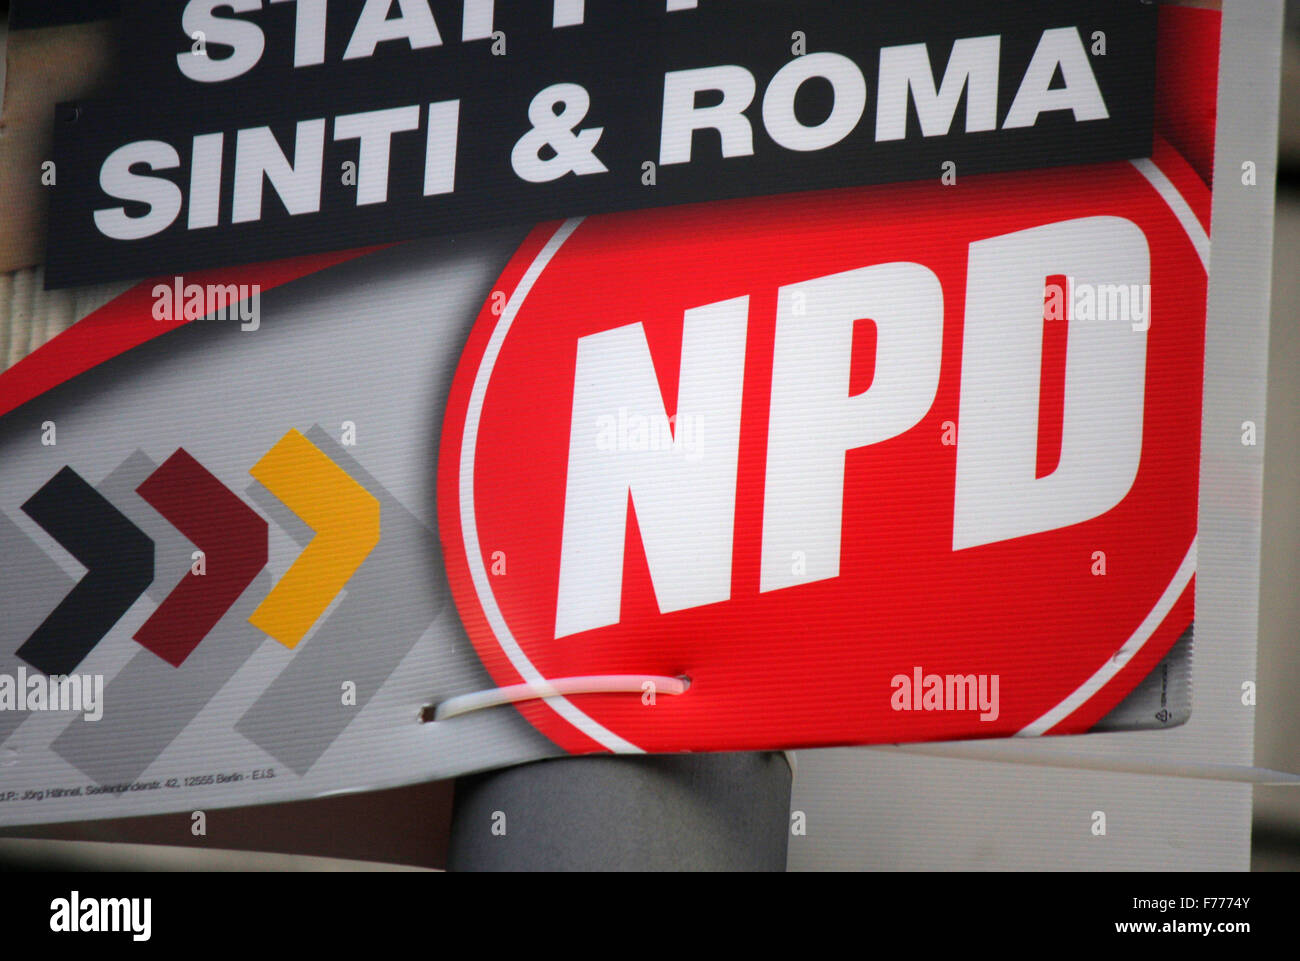 'Geld fuer Oma - statt fuer Sinti und Roma' der rechtsextremen Partei 'NPD' - Wahlplakate zur anstehenden Europawahl, Berlin. Stock Photo